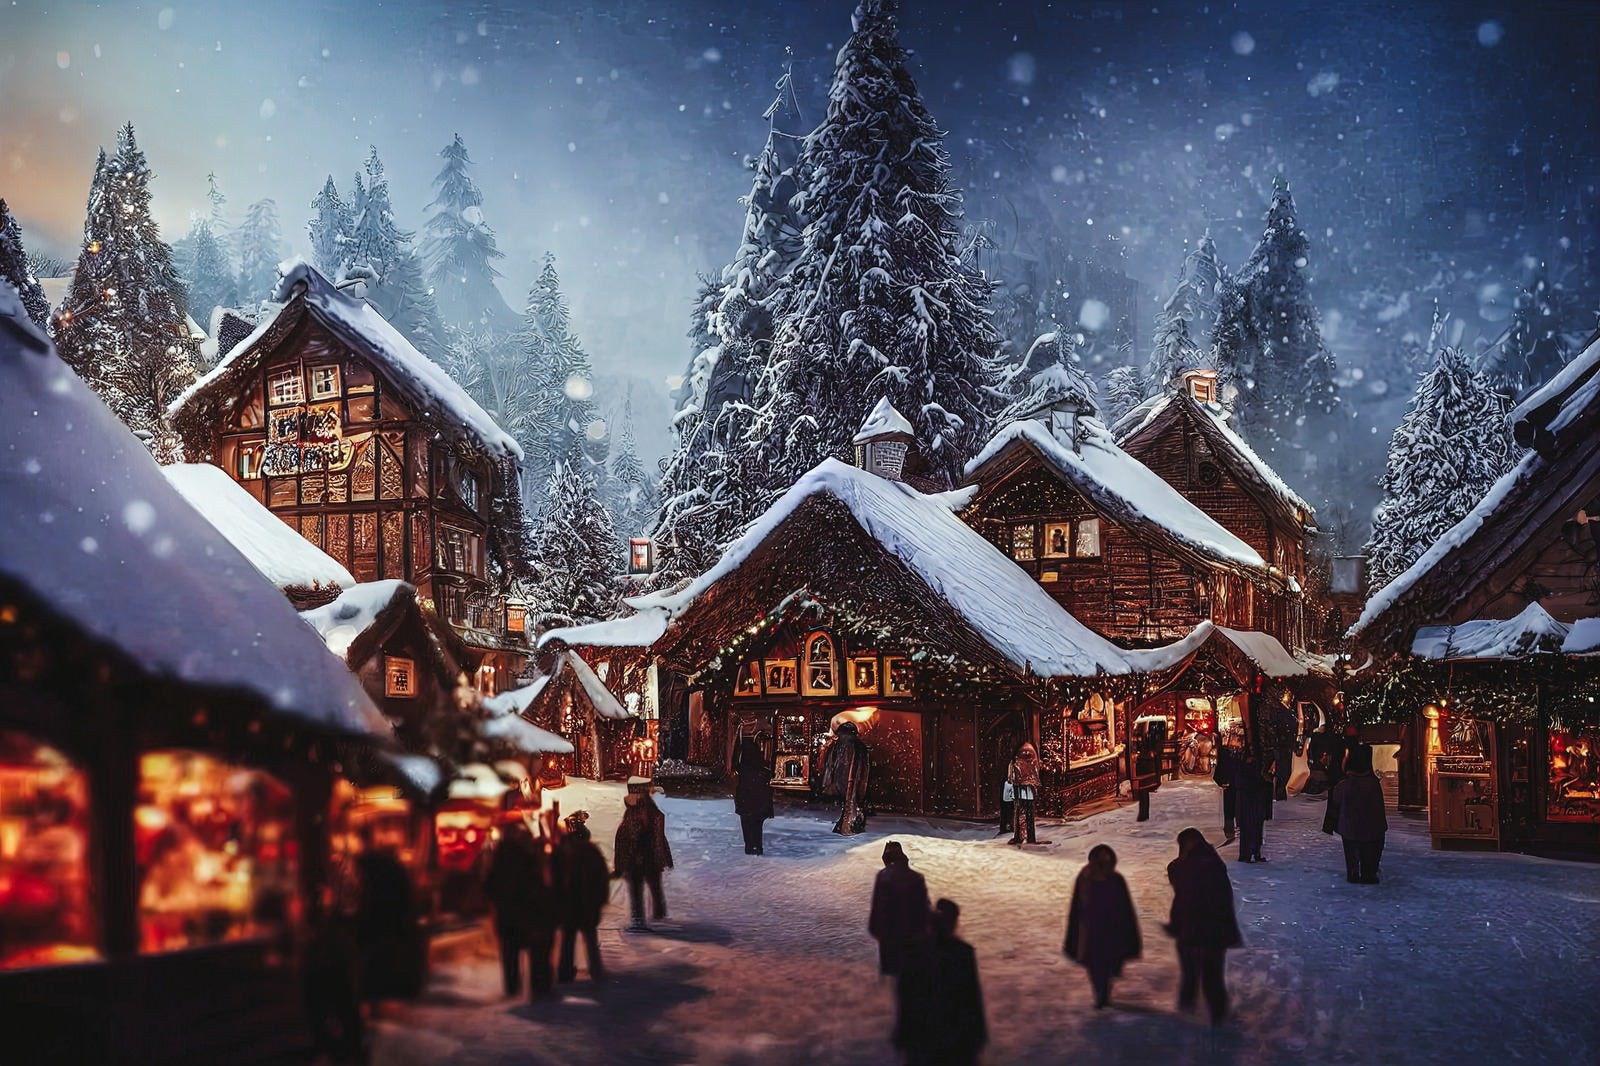 「屋根に雪が積もるクリスマスムードの街並み」の写真